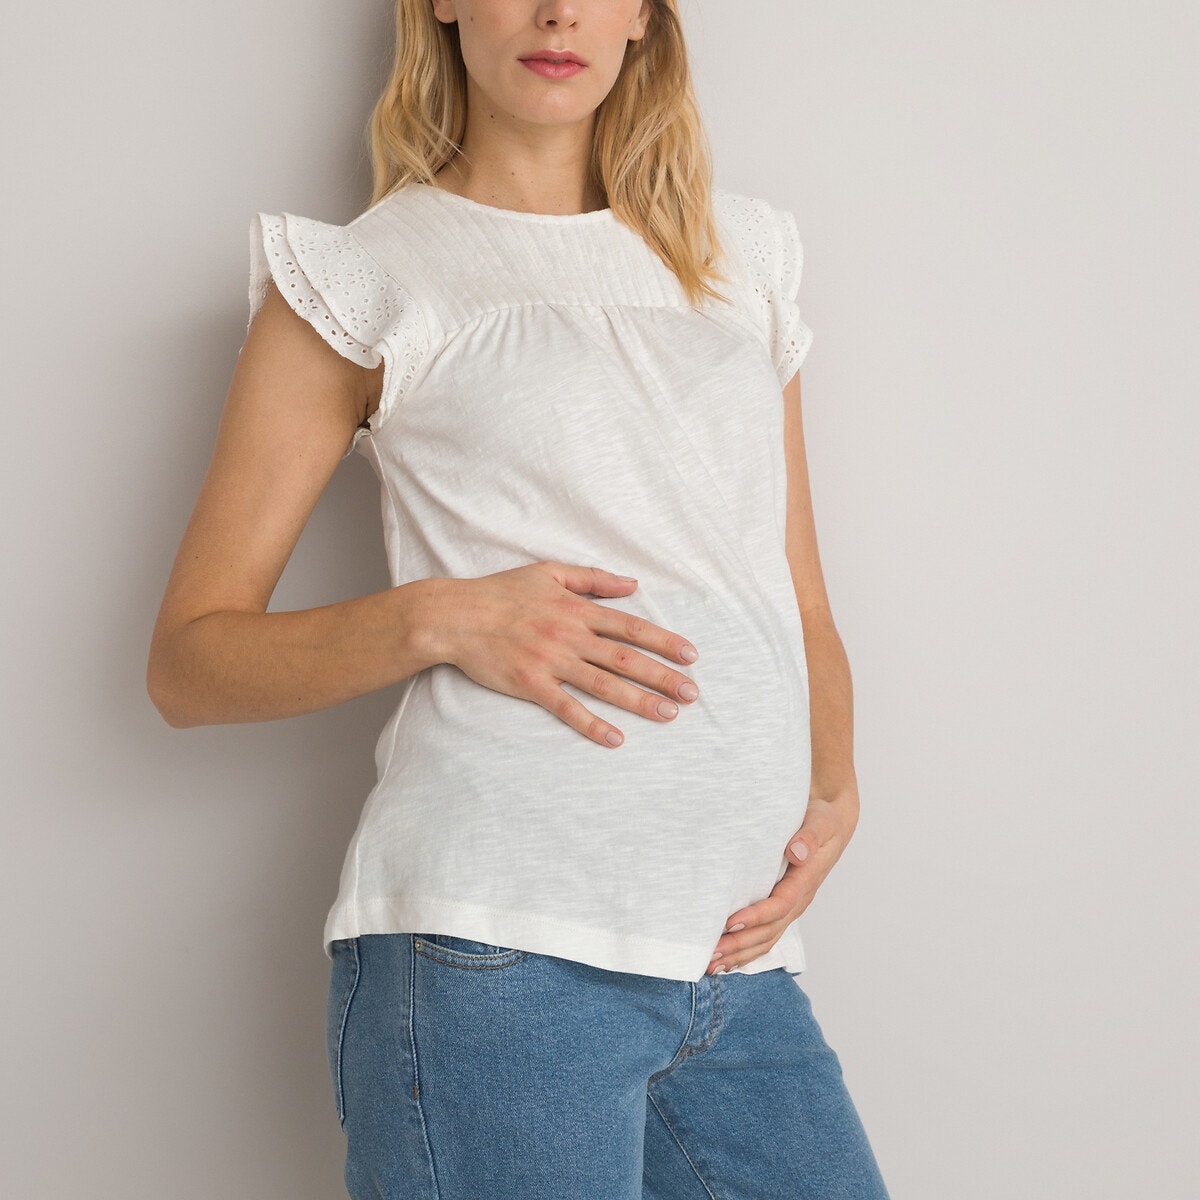 Μόδα > Γυναικεία > Ρούχα > T-shirt, αμάνικες μπλούζες > T-shirt με κοντά μανίκια Μπλούζα εγκυμοσύνης με βολάν και κεντημένες λεπτομέρειες